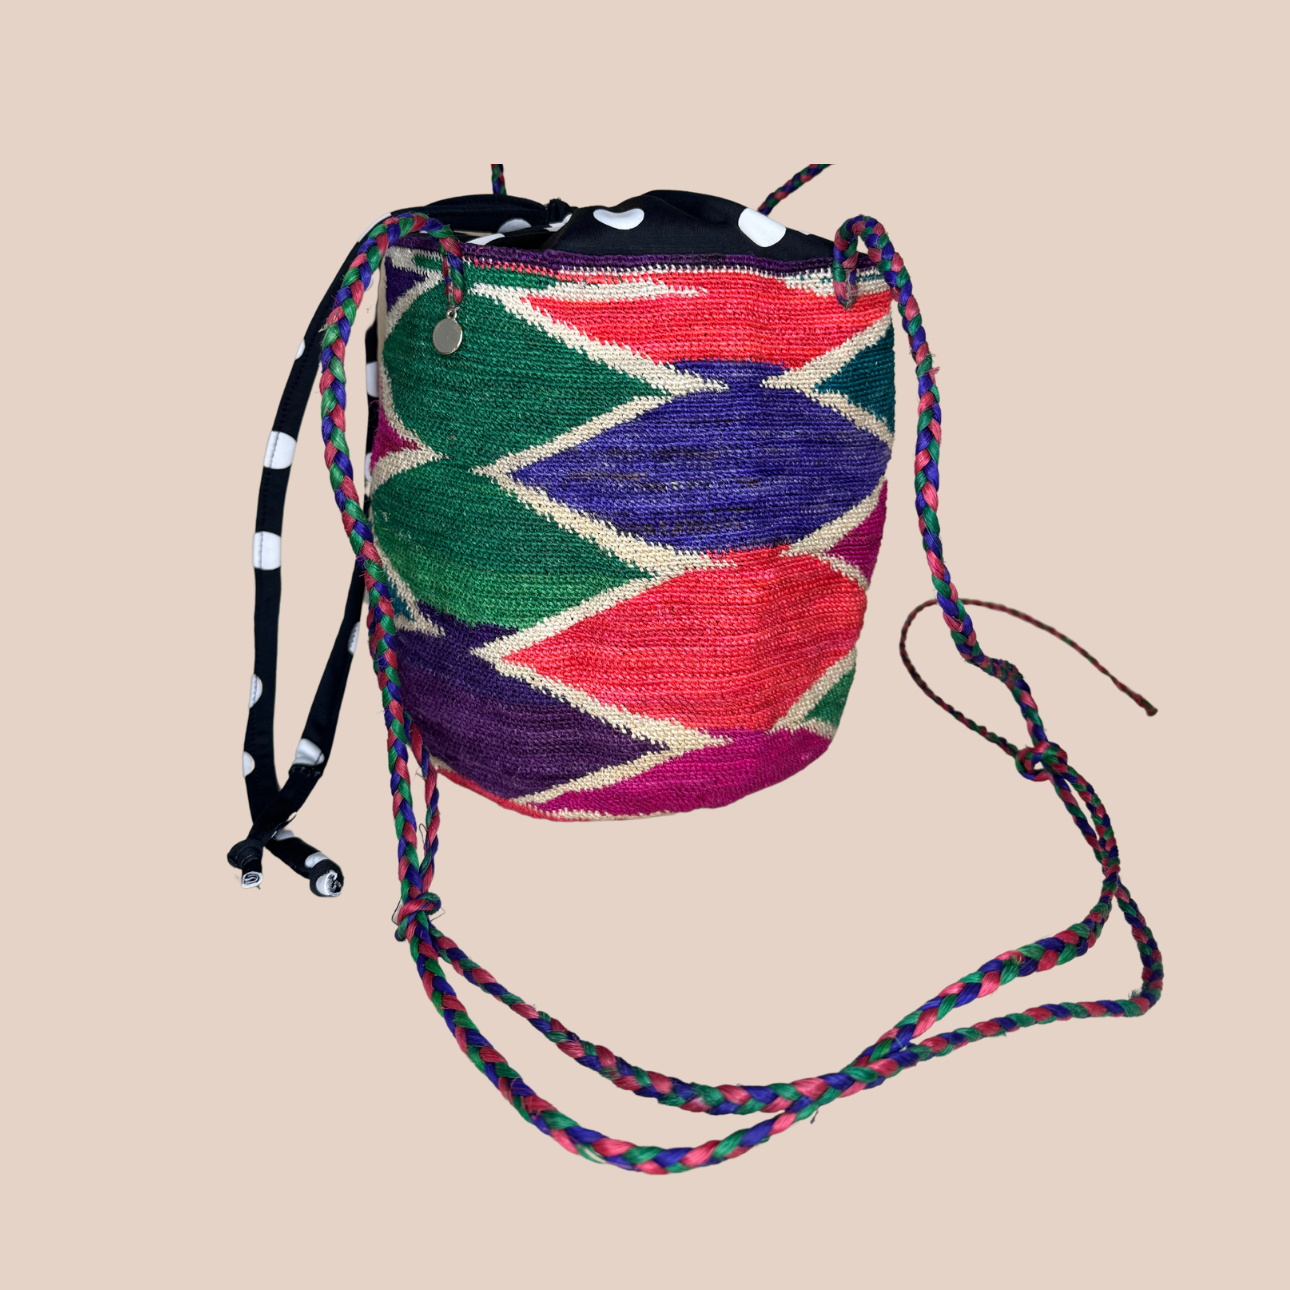  Image du sac GUAPITA doublure noire pois blancs de Maison Badigo, sac en laine crocheté multicolore unique et tendance